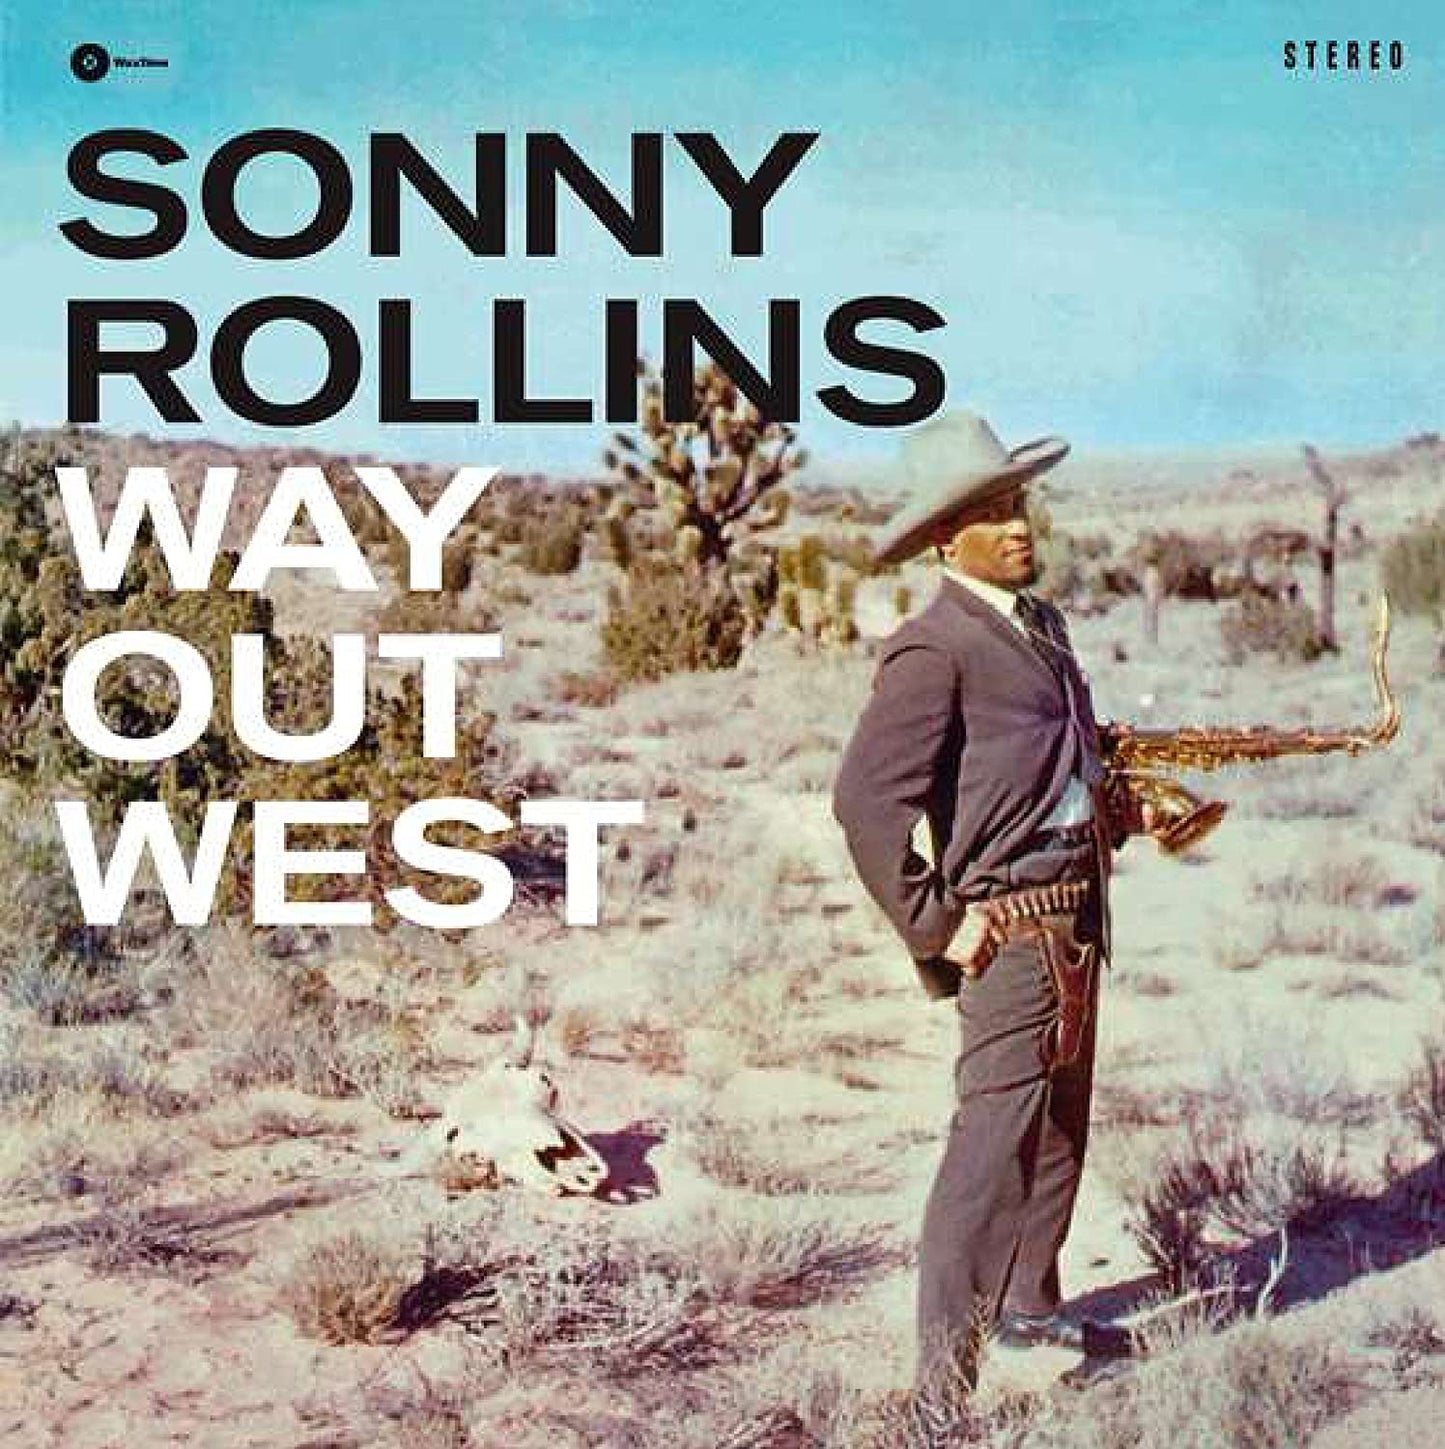 Sonny Rollins - Way Out West - LP